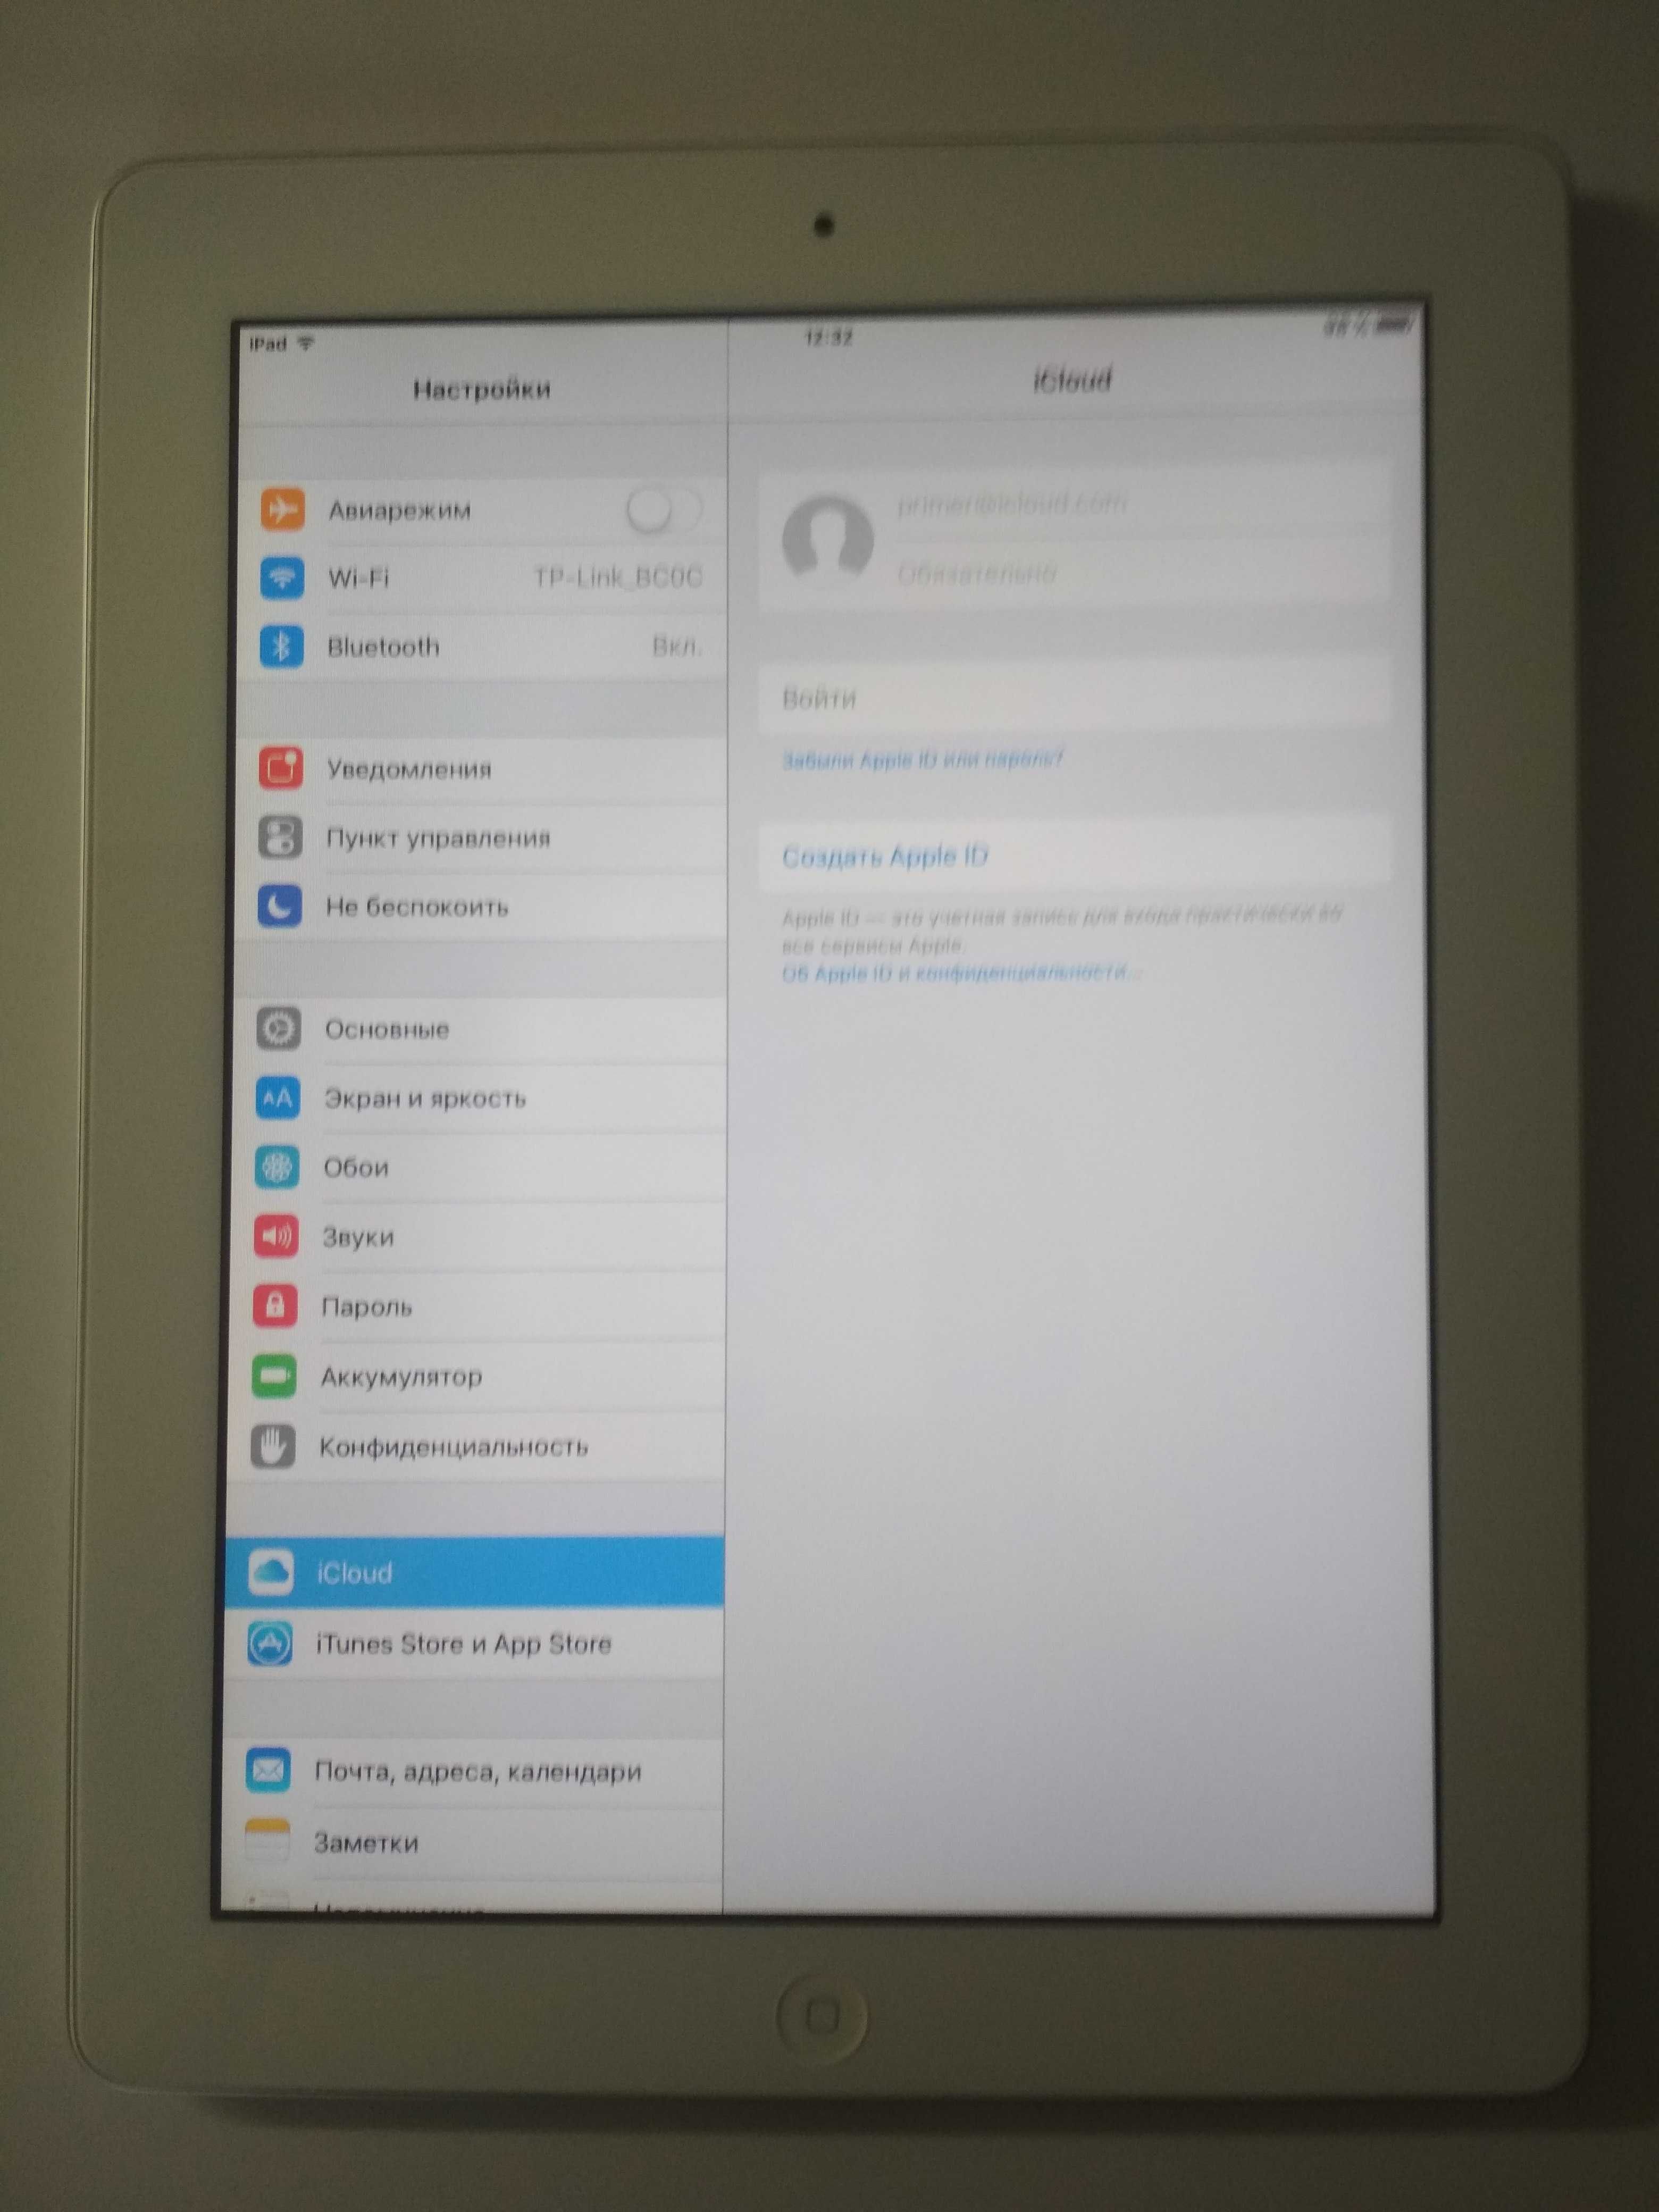 Apple iPad 2 A1395 Wi-Fi 16GB White, хорошее состояние